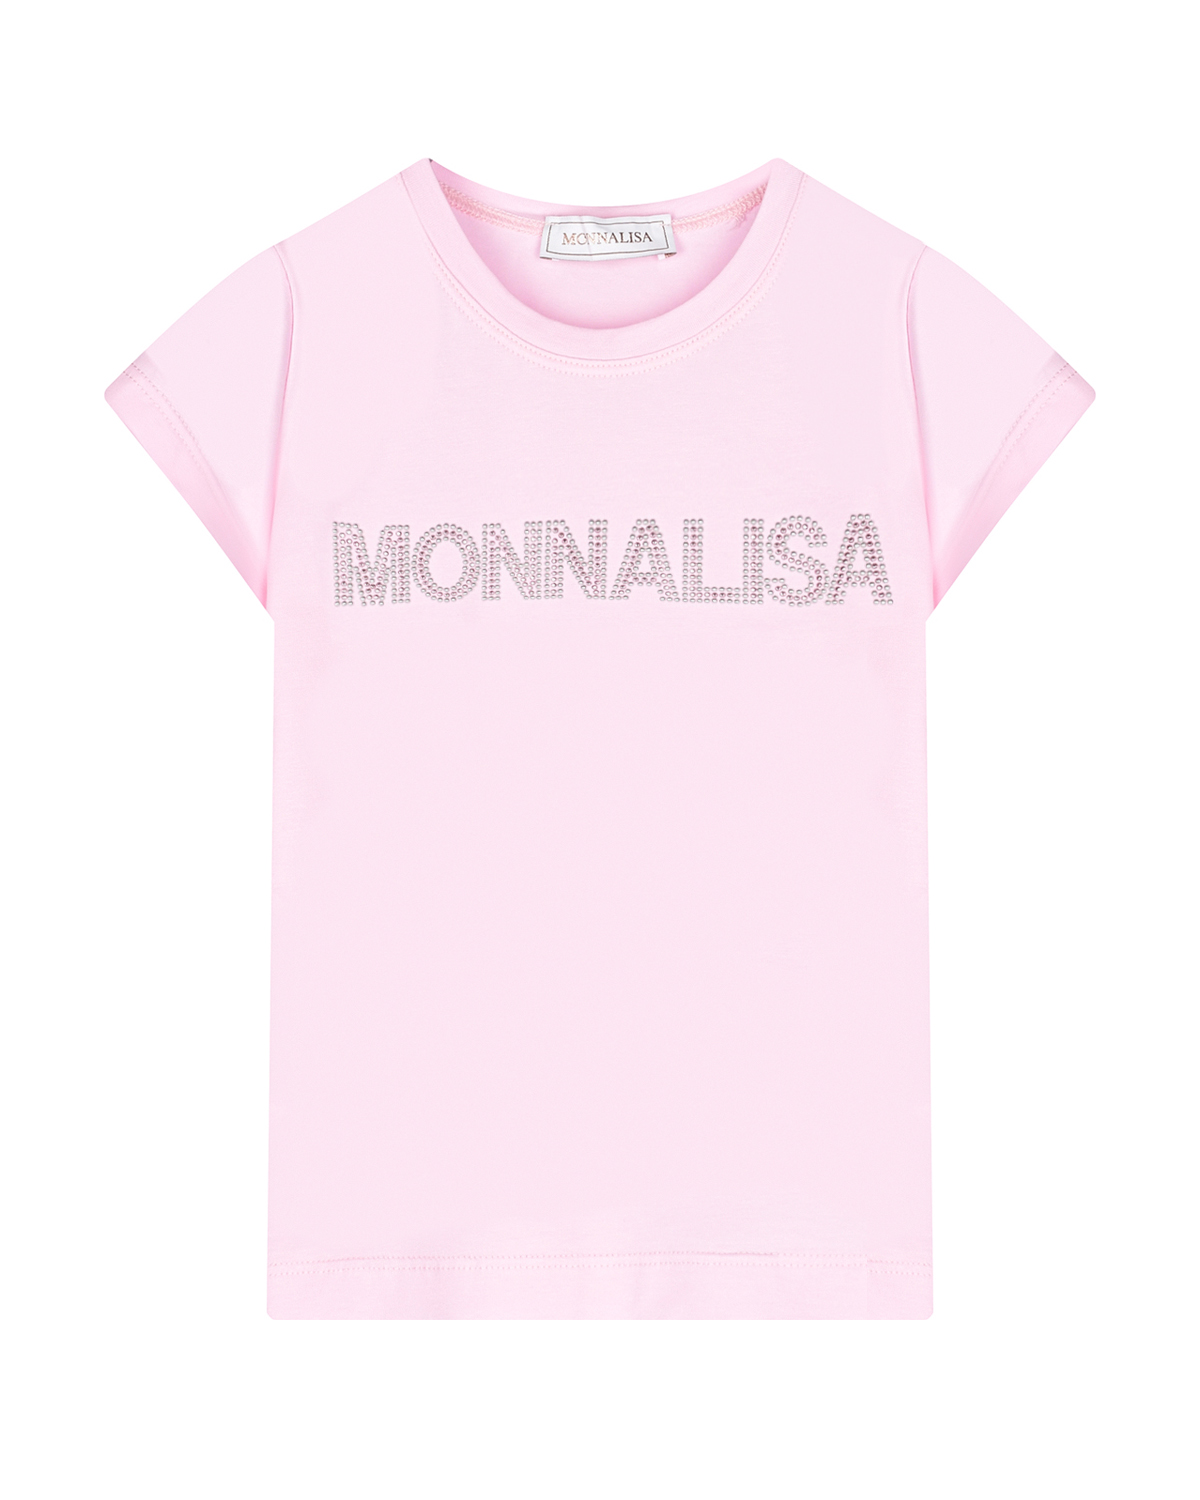 Розовая футболка с лого из стразов Monnalisa серая шапка с сердечками из стразов il trenino детская